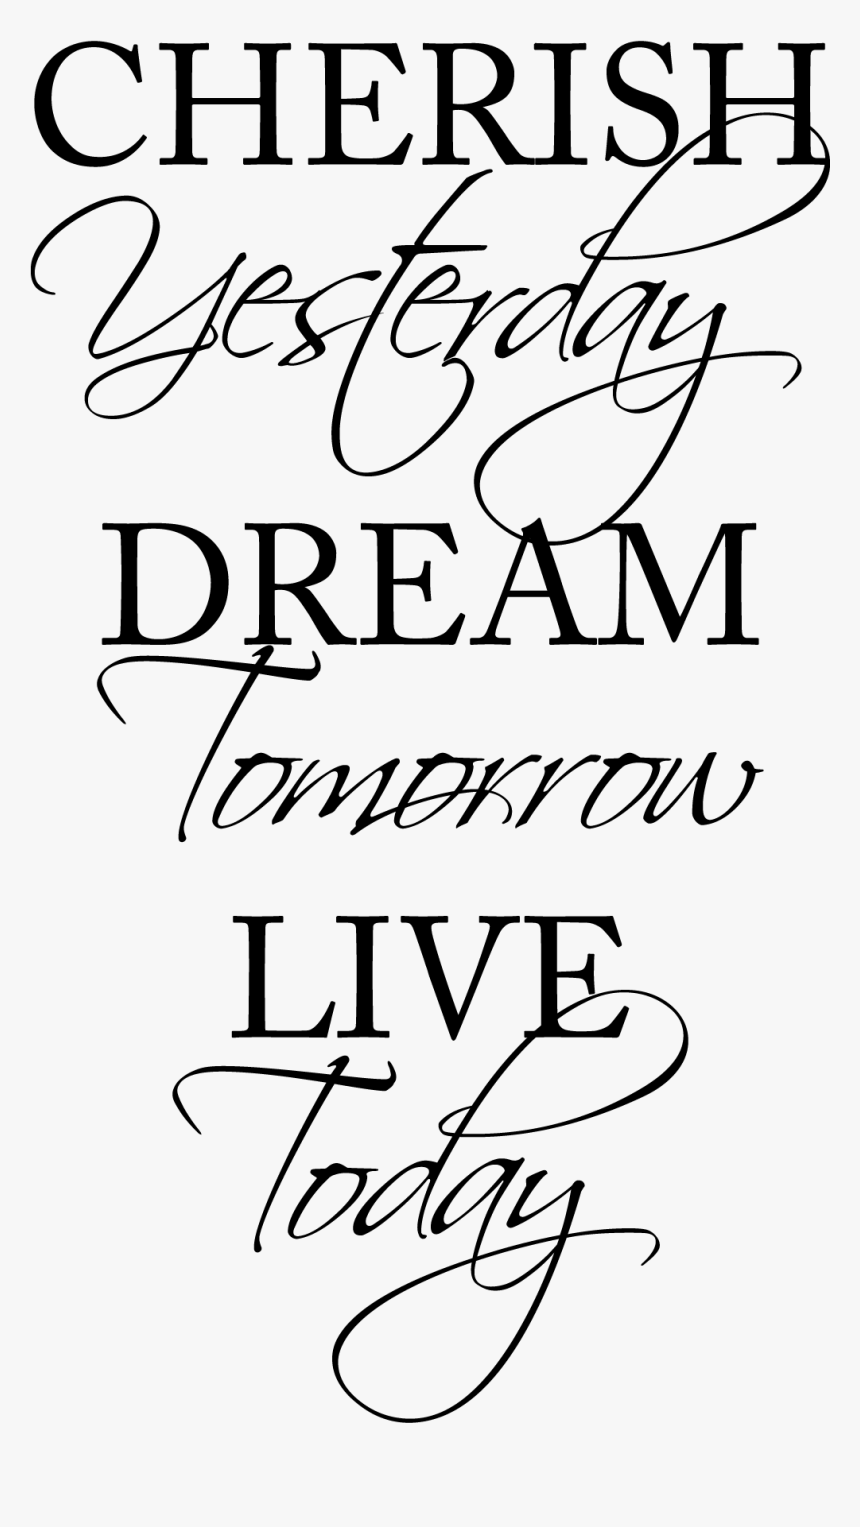 Мечтай регистрация. Вдохновляющие цитаты для наклейки. Cherish yesterday. Live today Dream tomorrow. Вдохновляющие цитаты леттеринг.